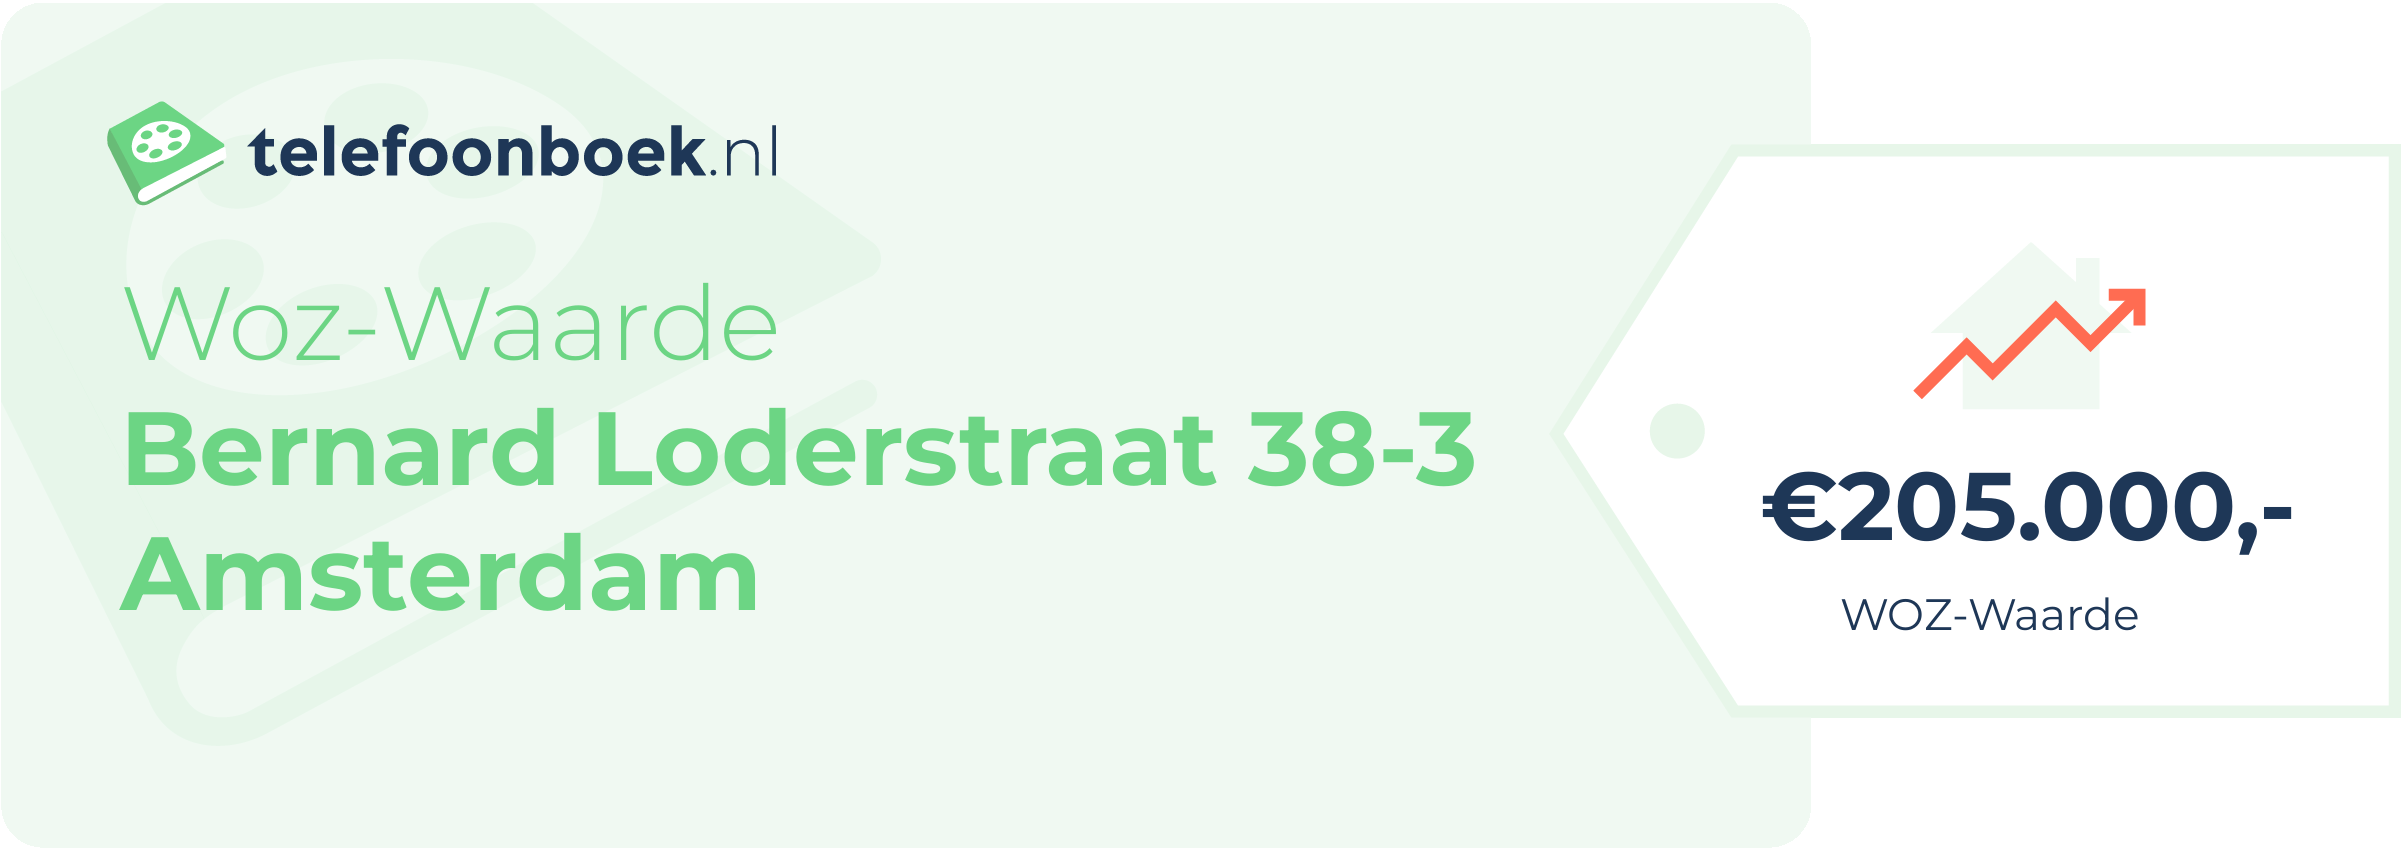 WOZ-waarde Bernard Loderstraat 38-3 Amsterdam